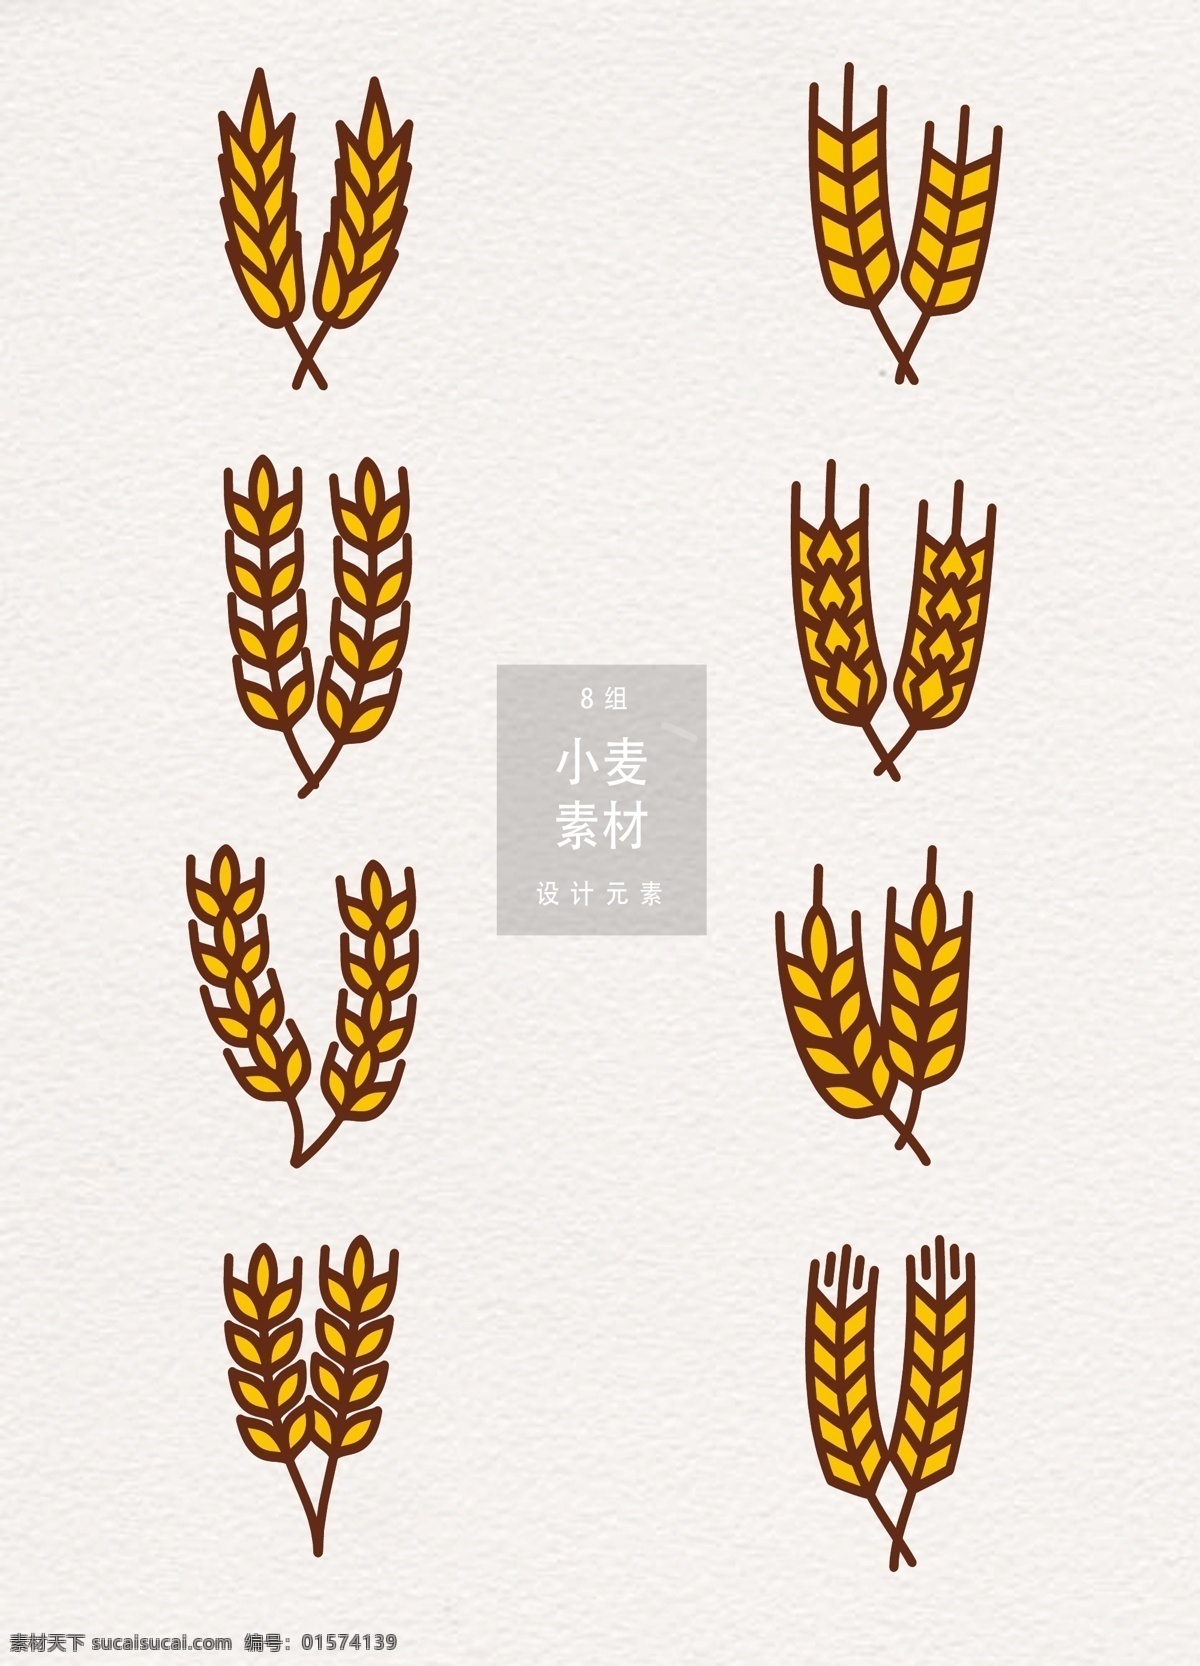 手绘小麦图案 小麦 设计元素 植物 麦穗 五谷 小满 二十四节气 传统节气 谷物 麦子 小麦图案